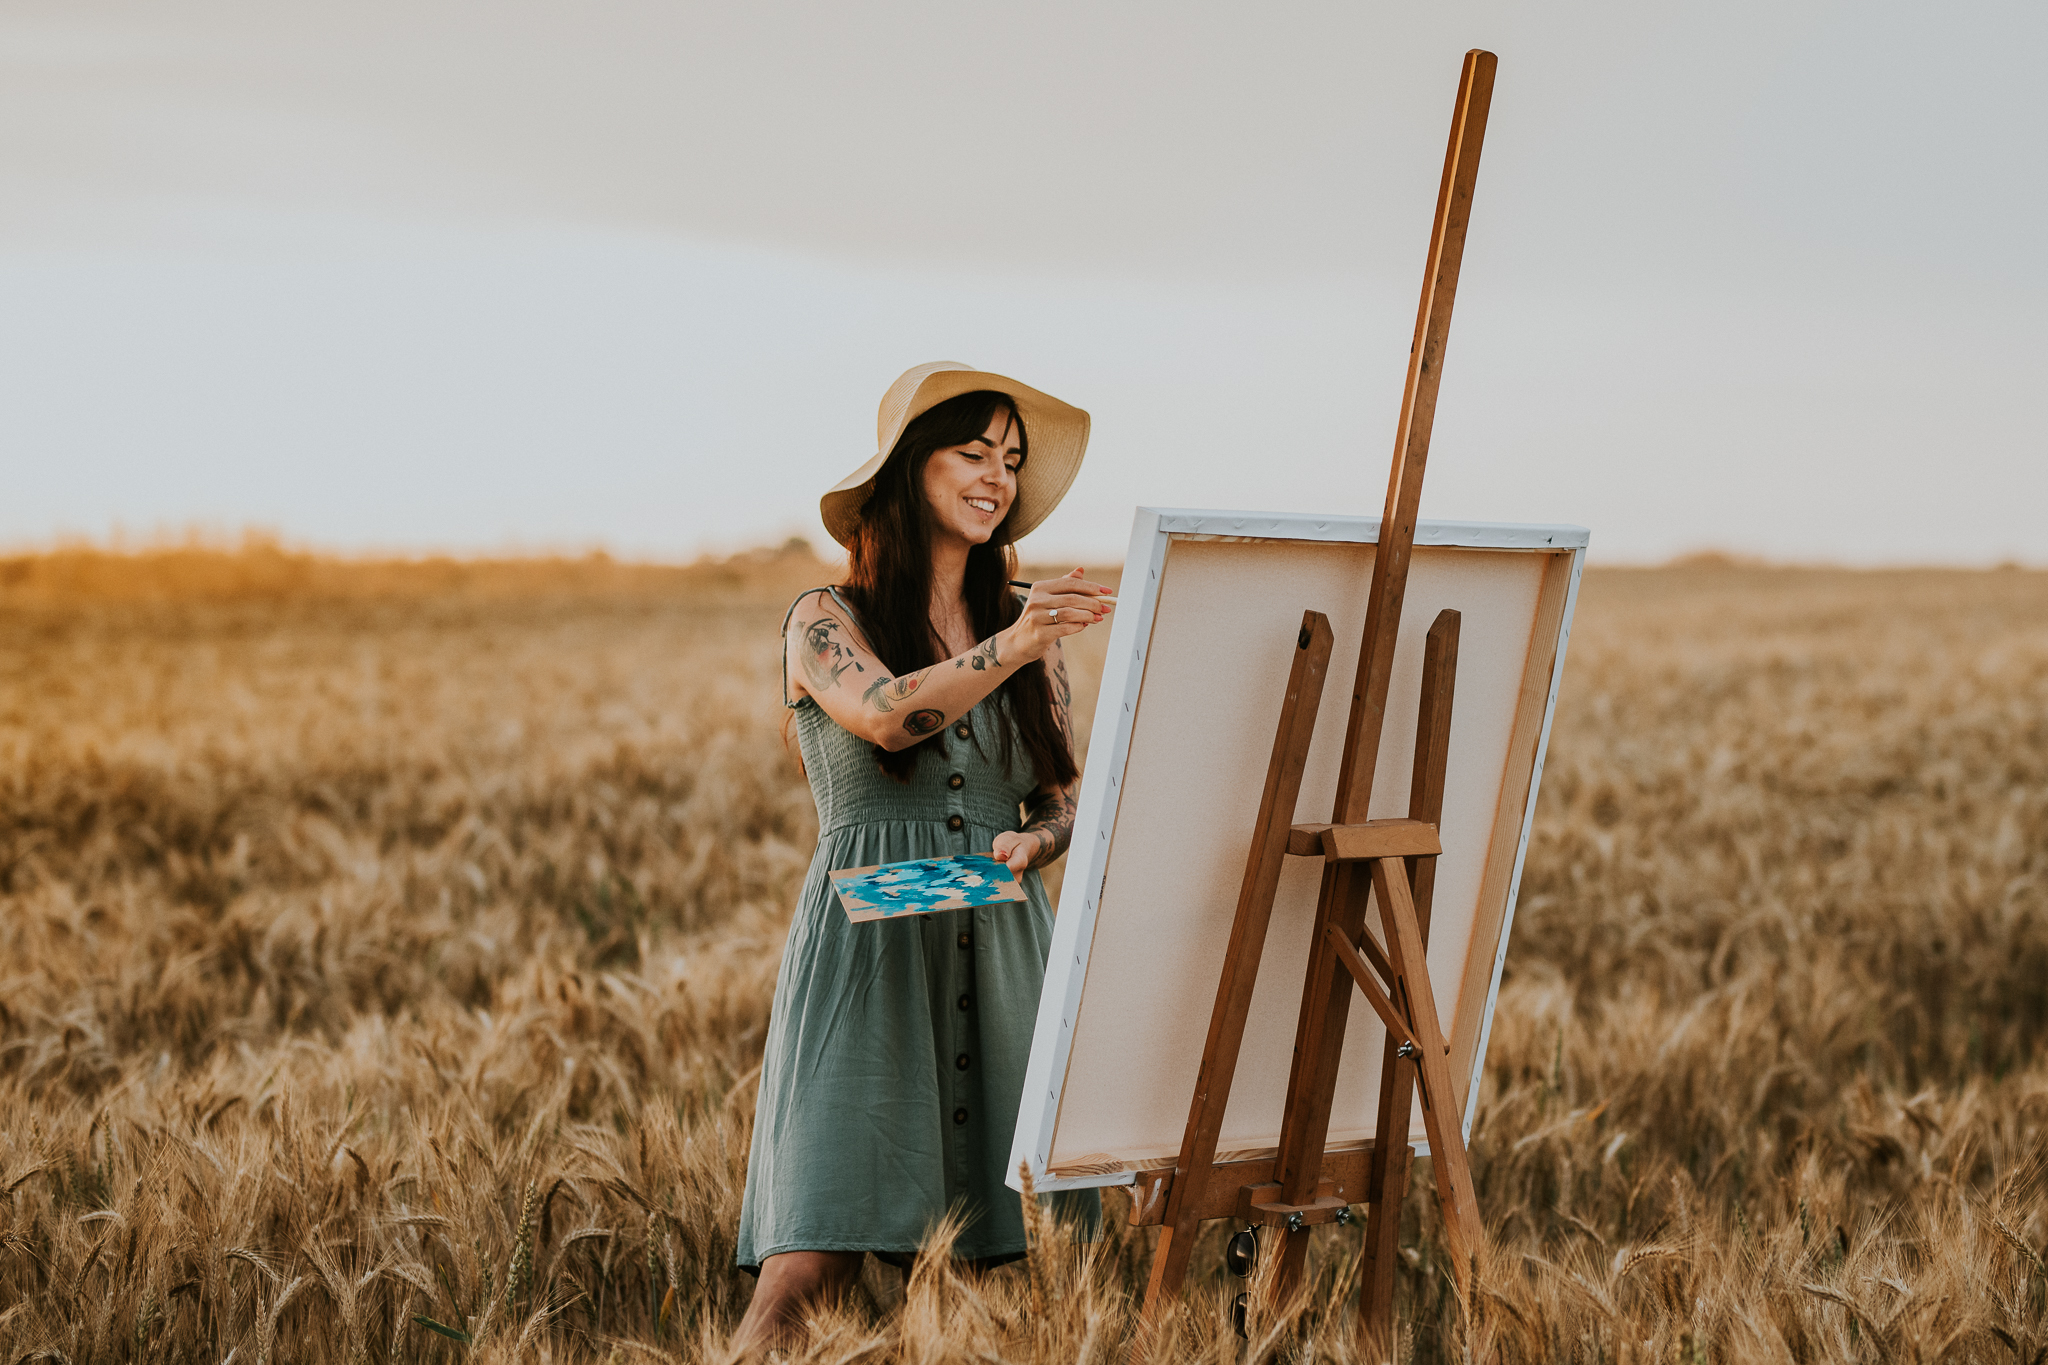 Kobieta maluje na sztaludze, stoi w zbożu